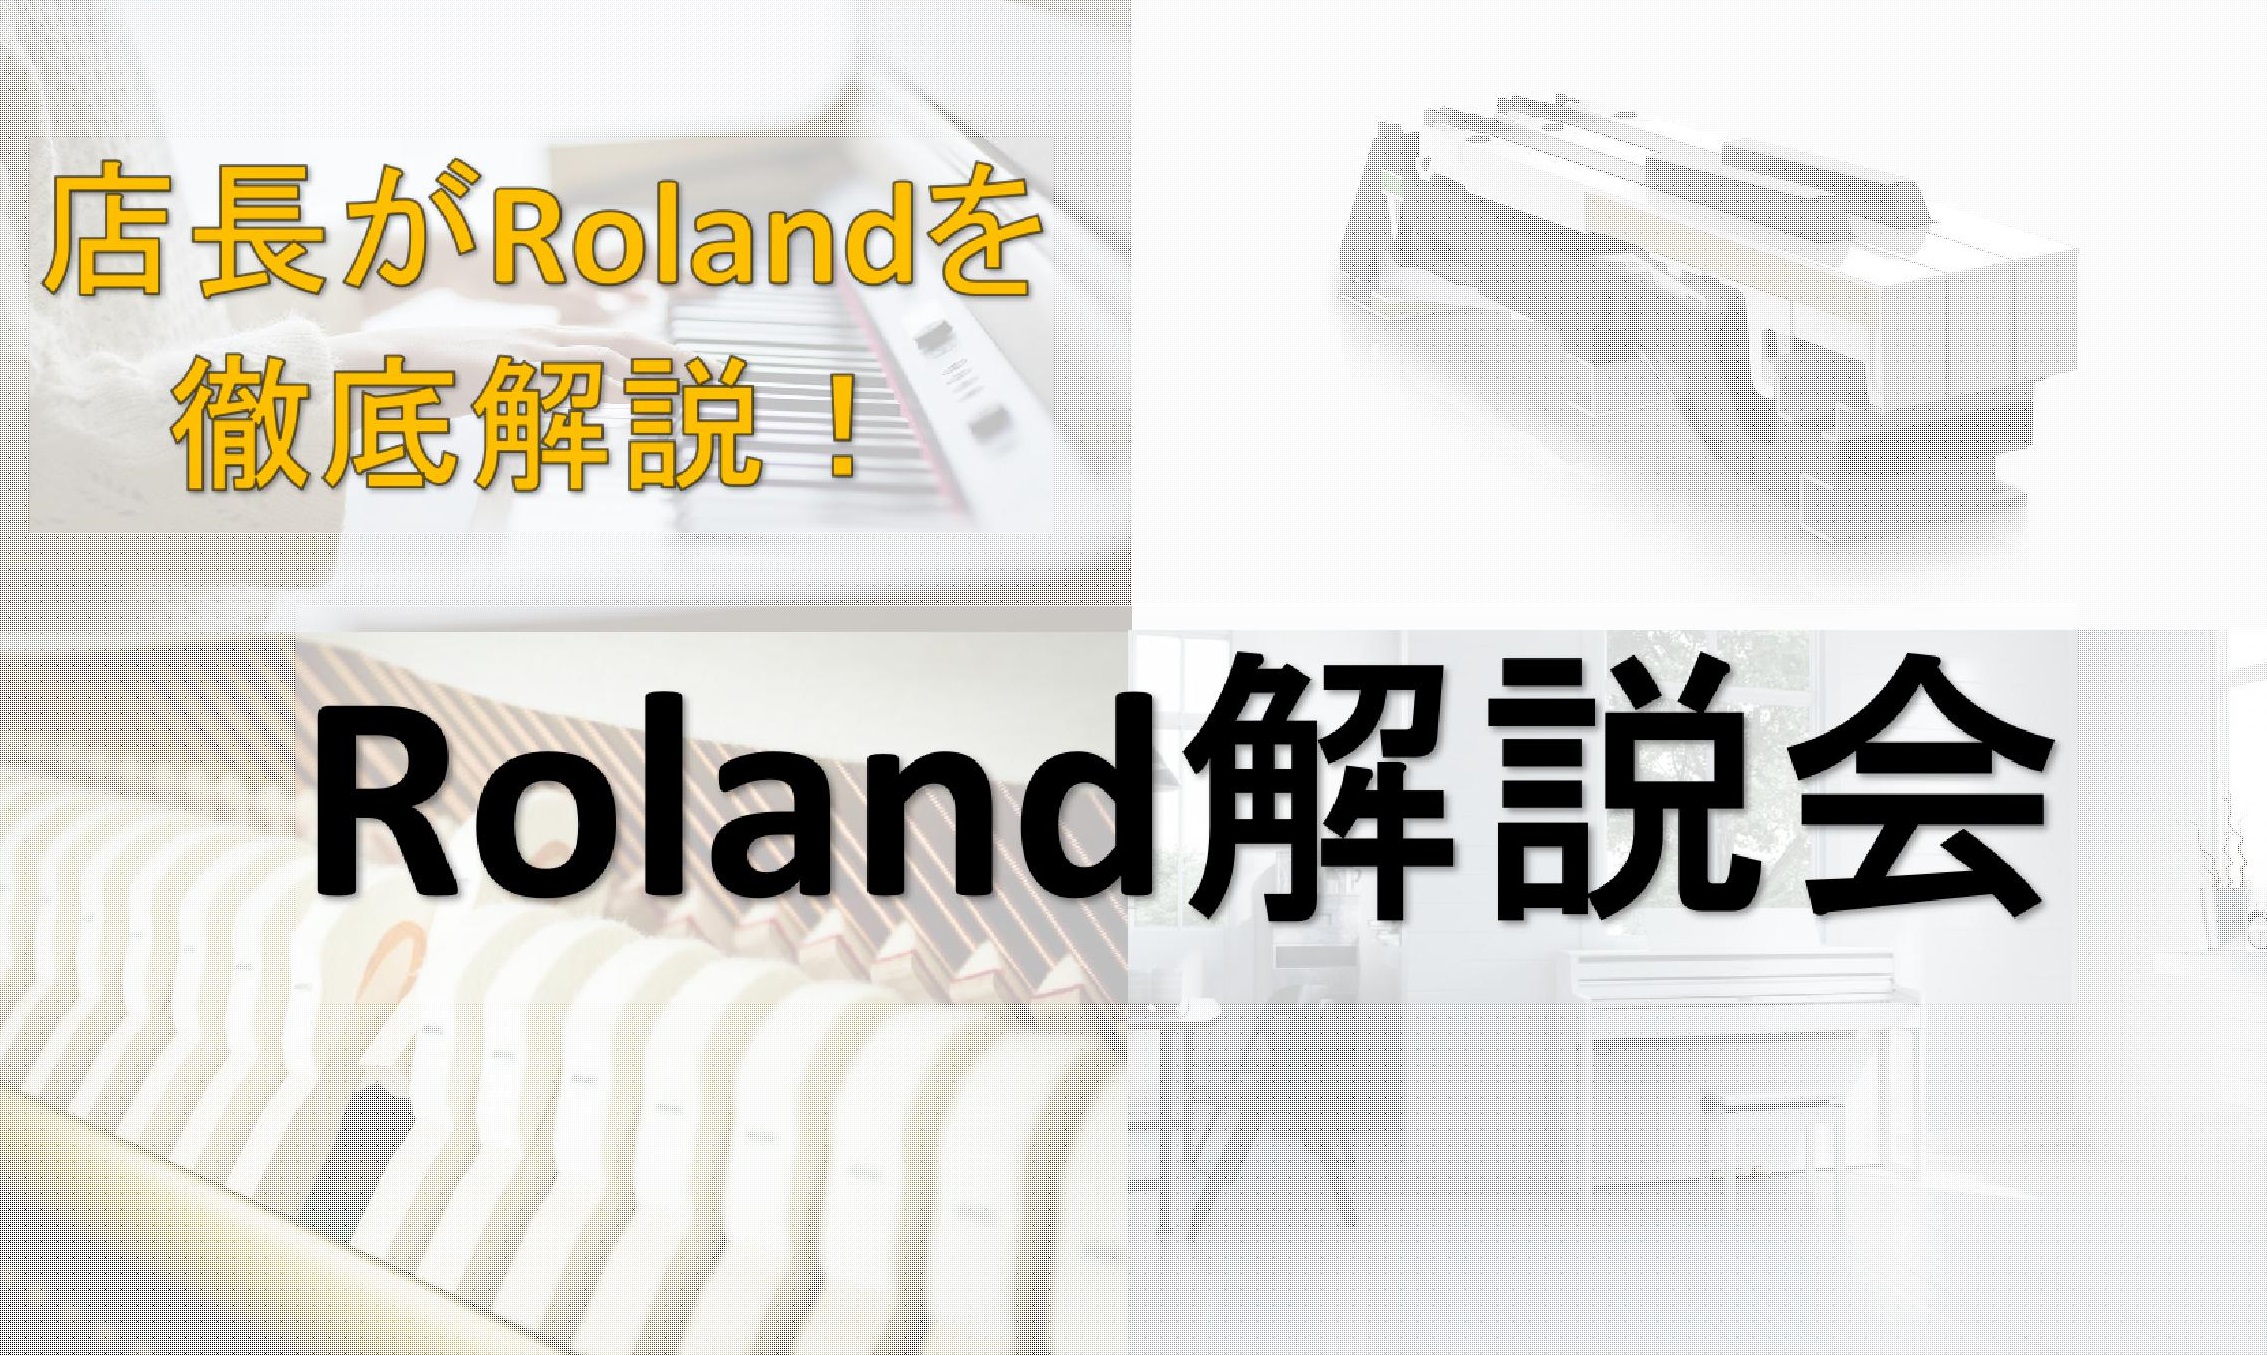 島村楽器吉祥寺パルコ店の野崎です。いつもご利用いただきまして誠にありがとうございます。 11月19日(日)Roland解説会を実施 店長の野崎が電子ピアノRolandについて徹底的に説明します！・Rolandを検討の方・電子ピアノを検討の方・メーカーの違いについて知りたい方・使い方の説明を知りたい方 […]